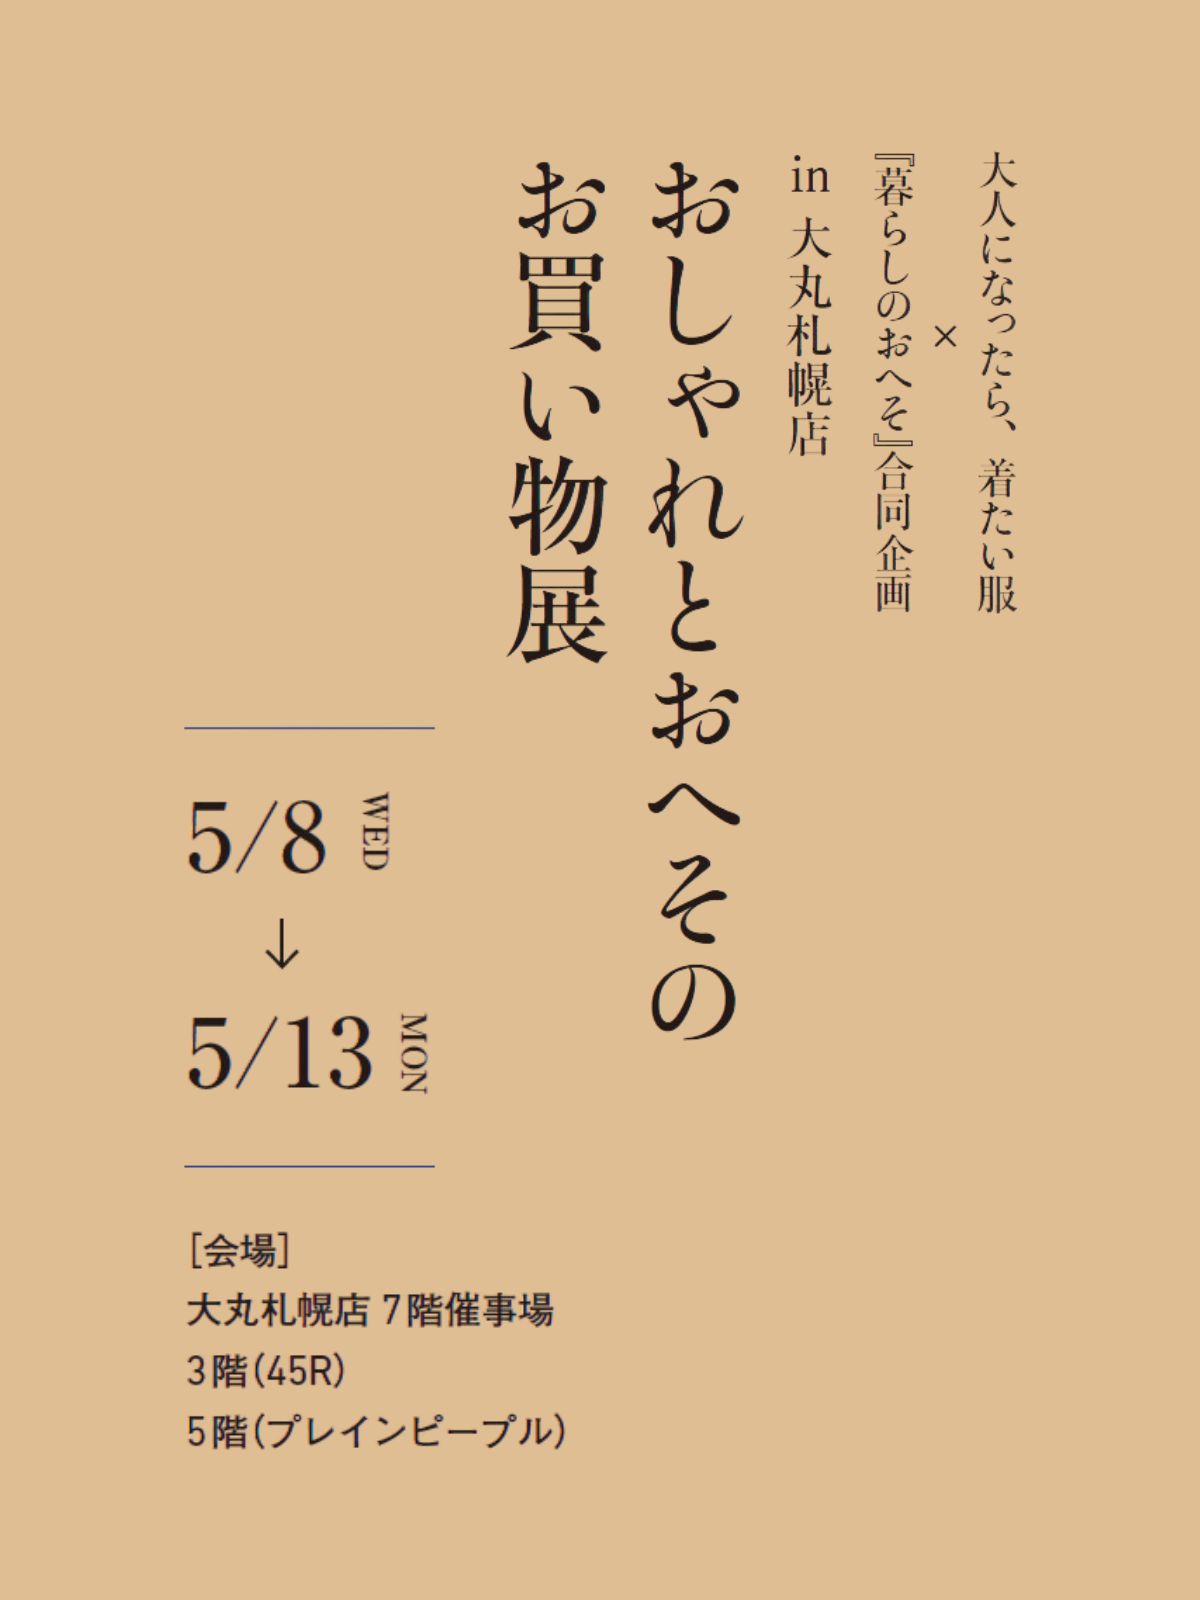 【大丸札幌店 POP-UP 開催！】5/8 (水) - 5/13 (月)